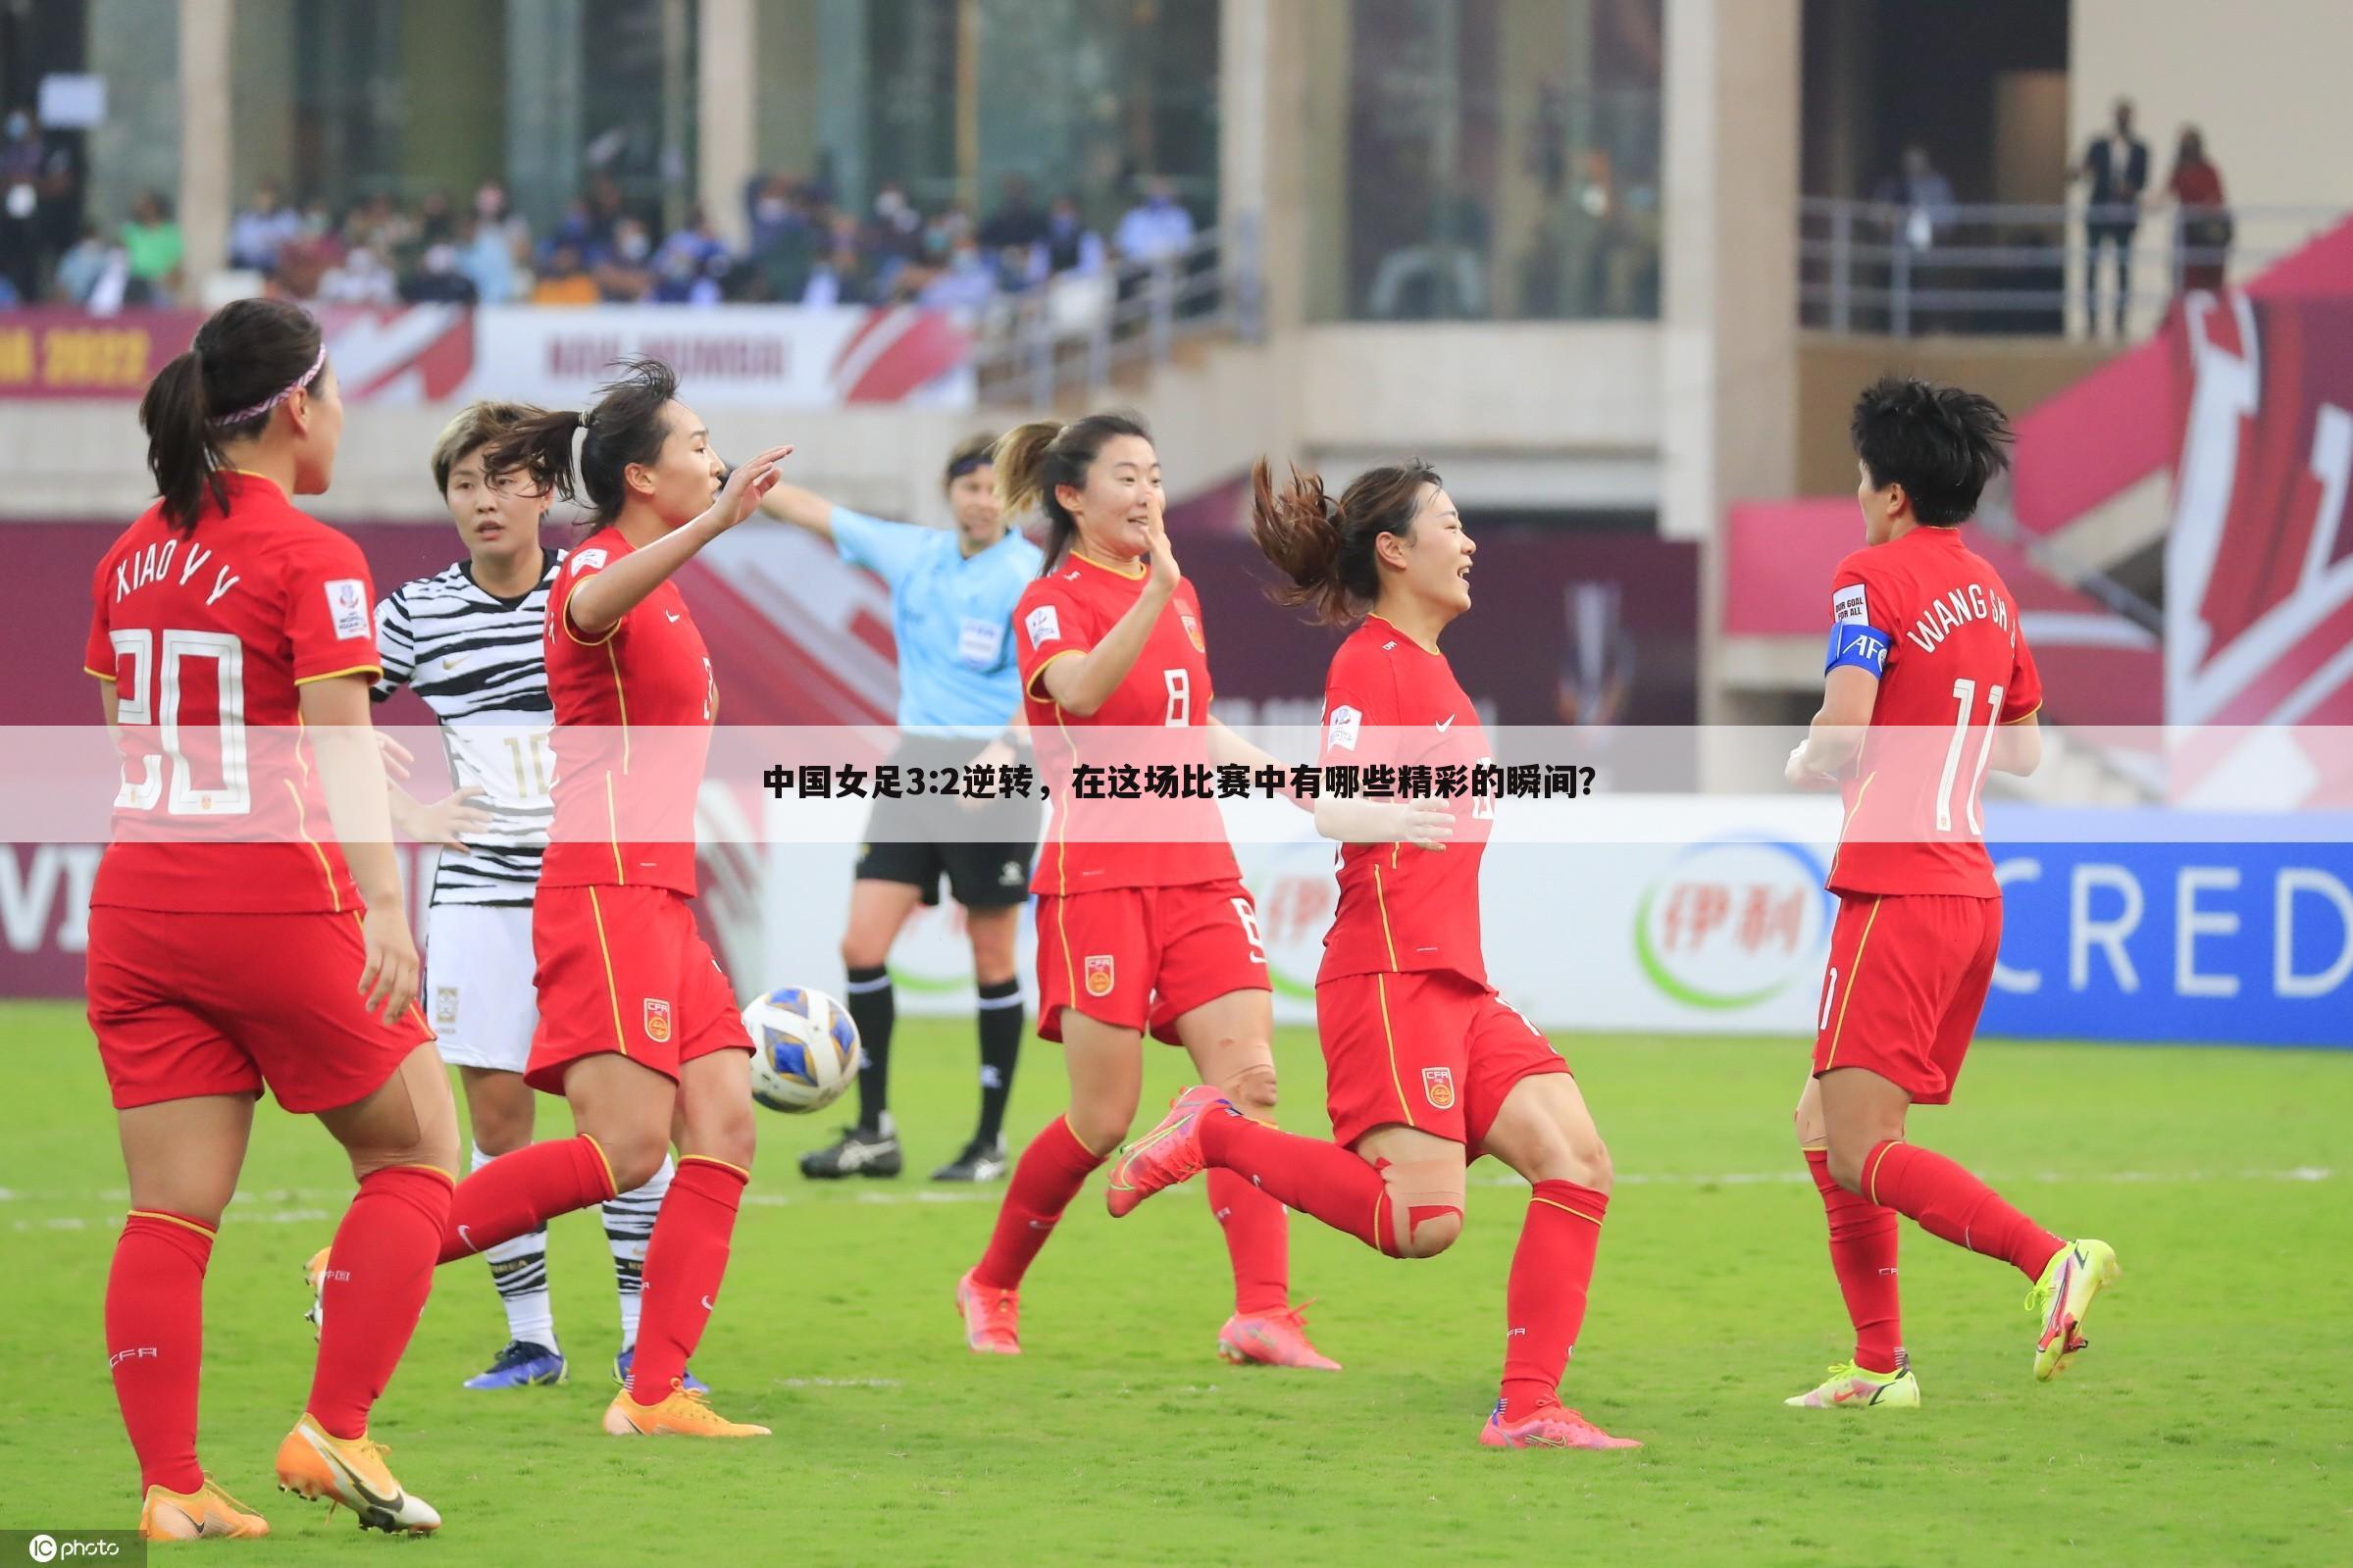 中国女足3:2逆转，在这场比赛中有哪些精彩的瞬间？